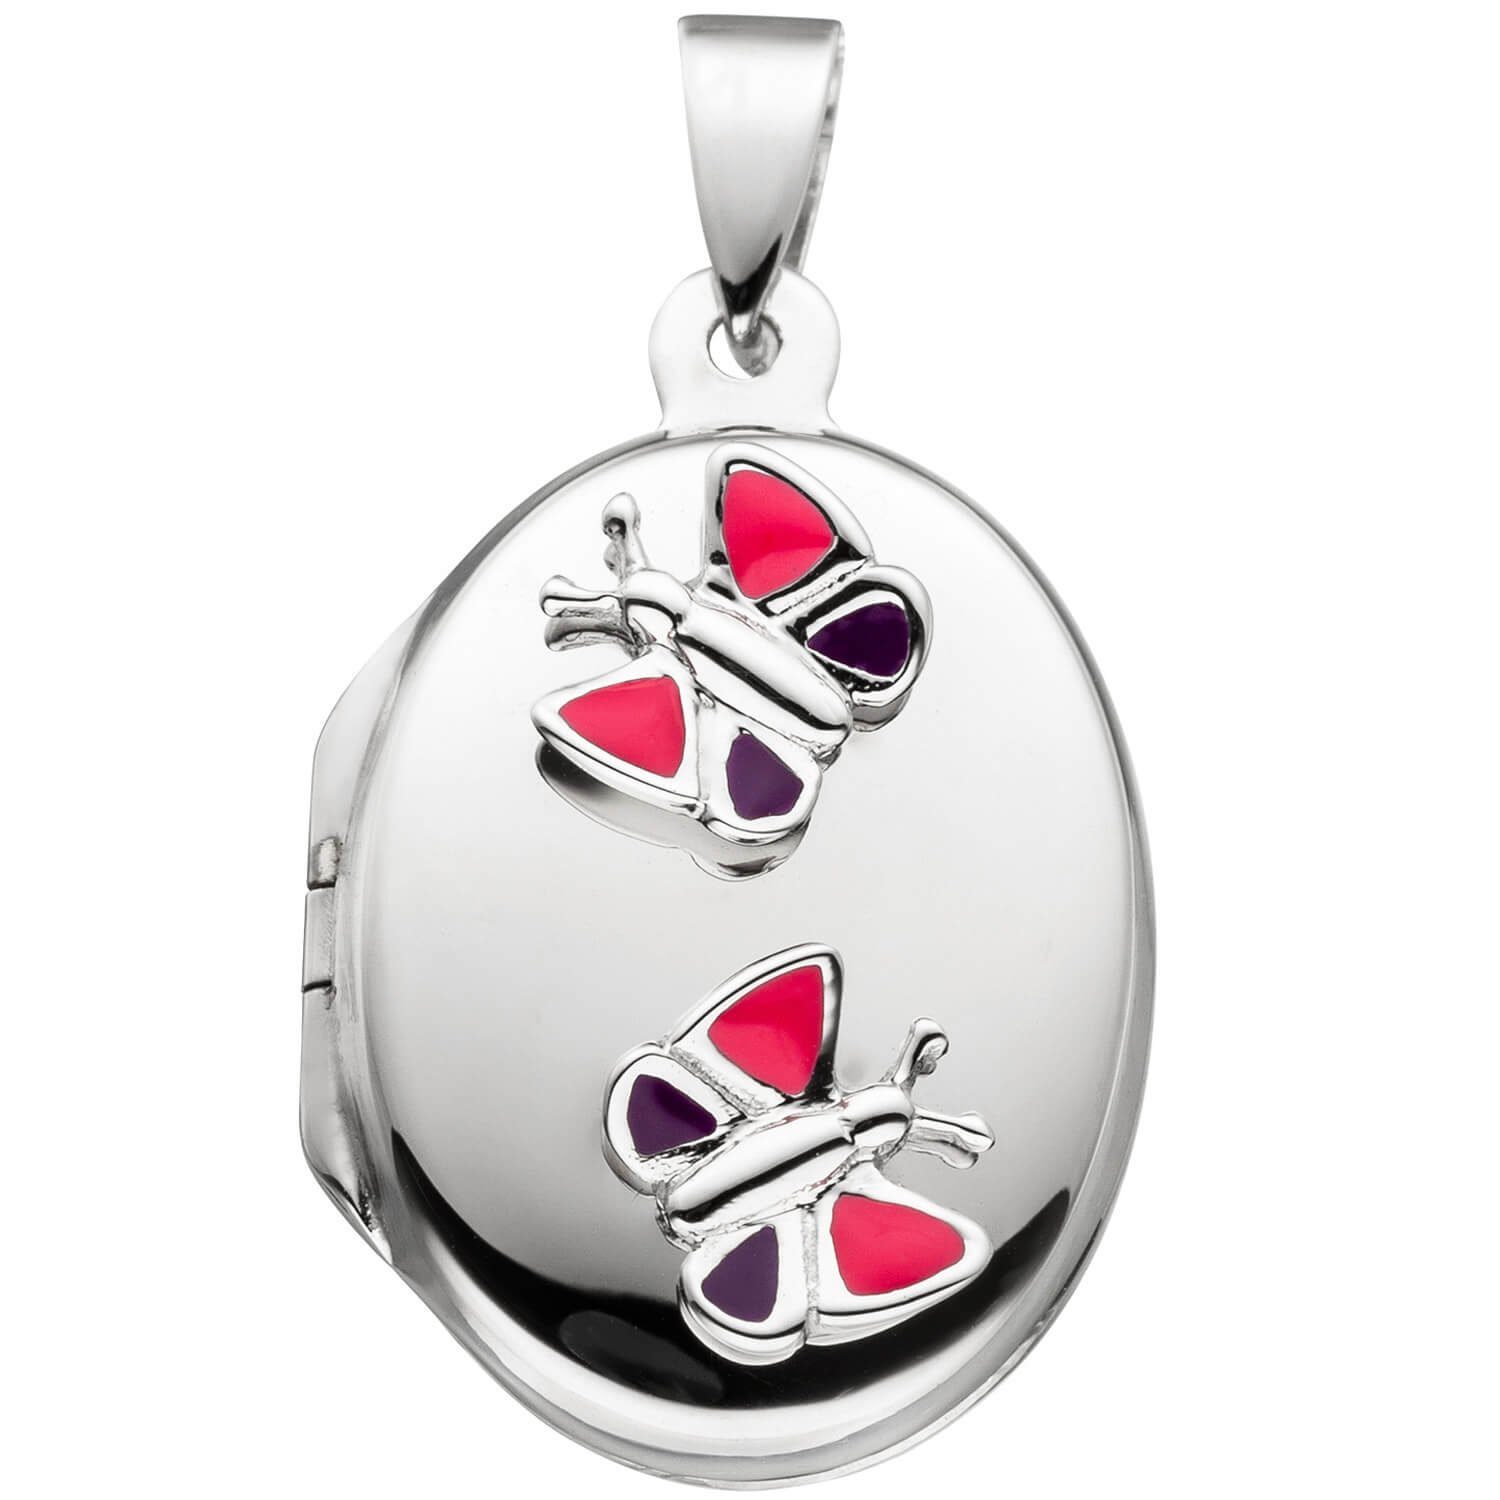 Krone oval mit Schmetterling Medaillon Öffnen Silberkette Schmuck Fotos zum Halskette 925 2 Silber 42cm